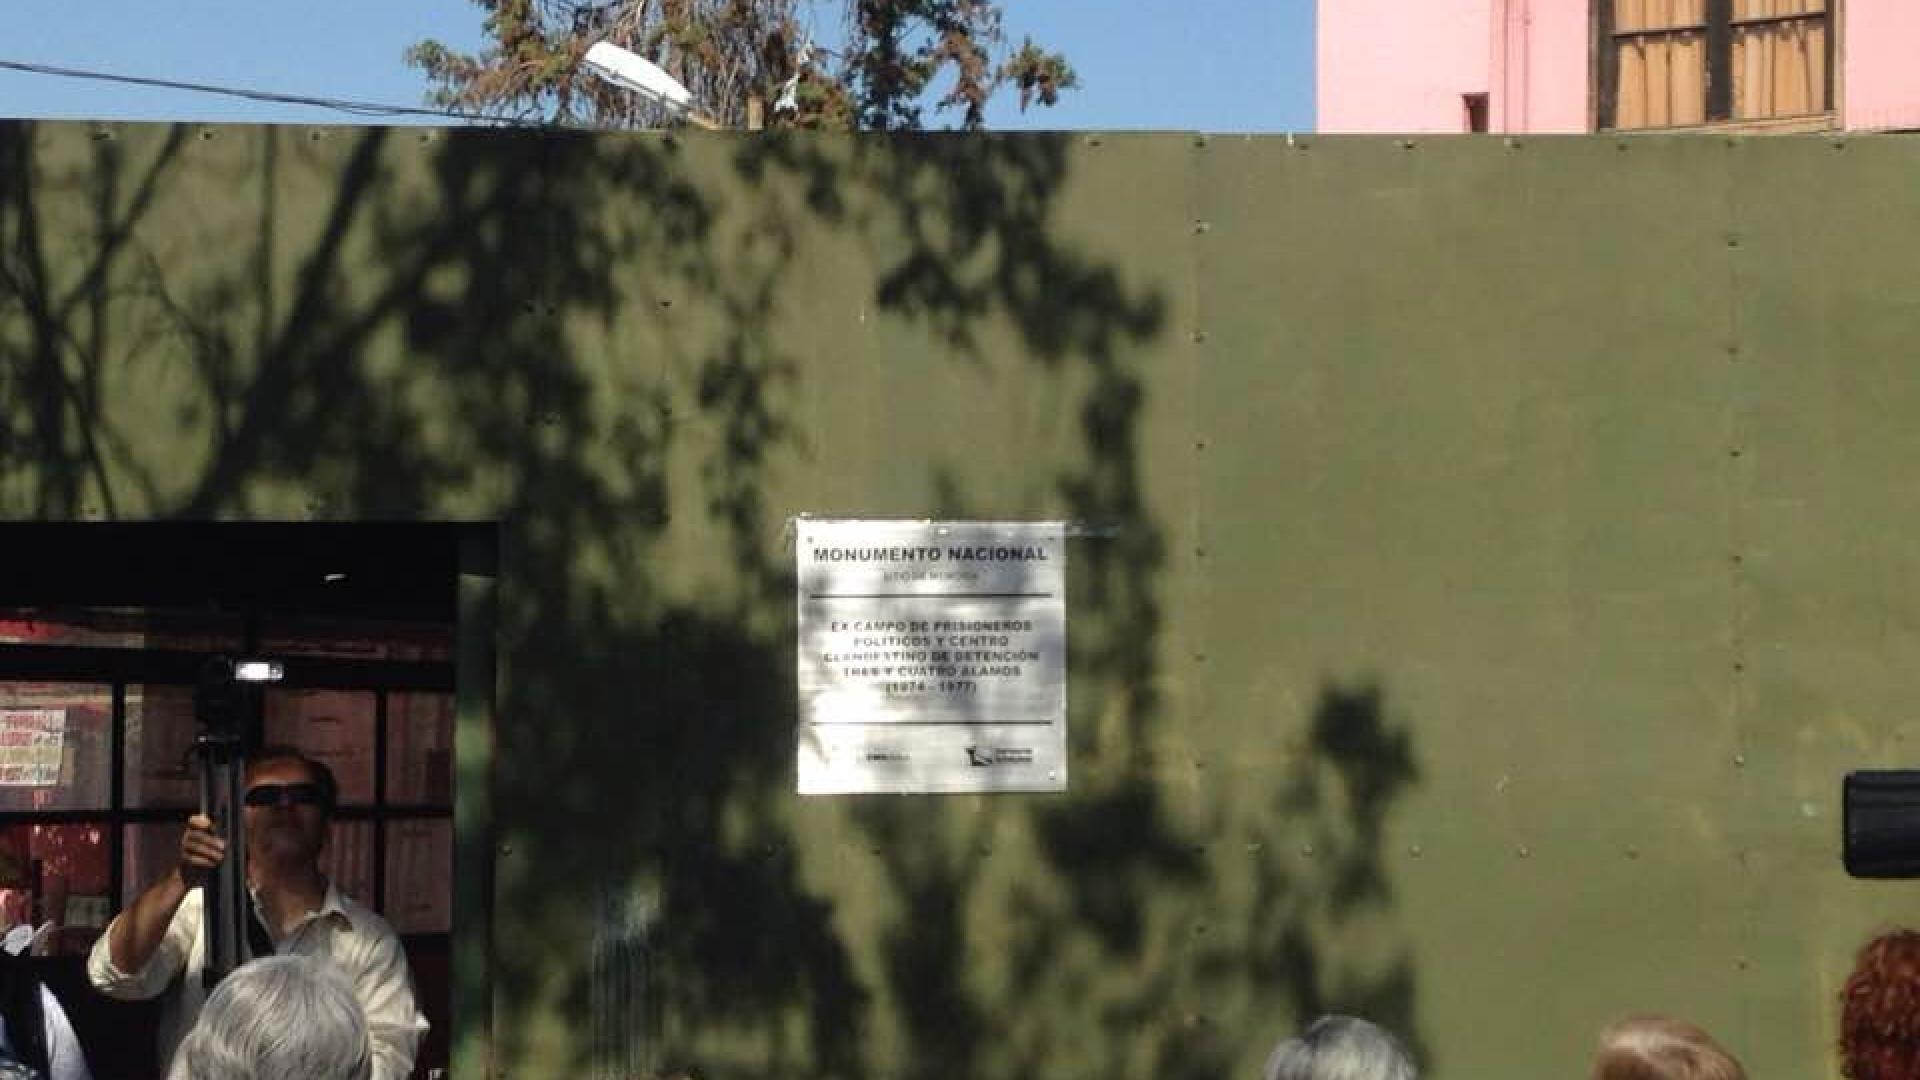 Imagen de Instalan placa identificatoria en campo de prisioneros políticos “3 y 4 Álamos”